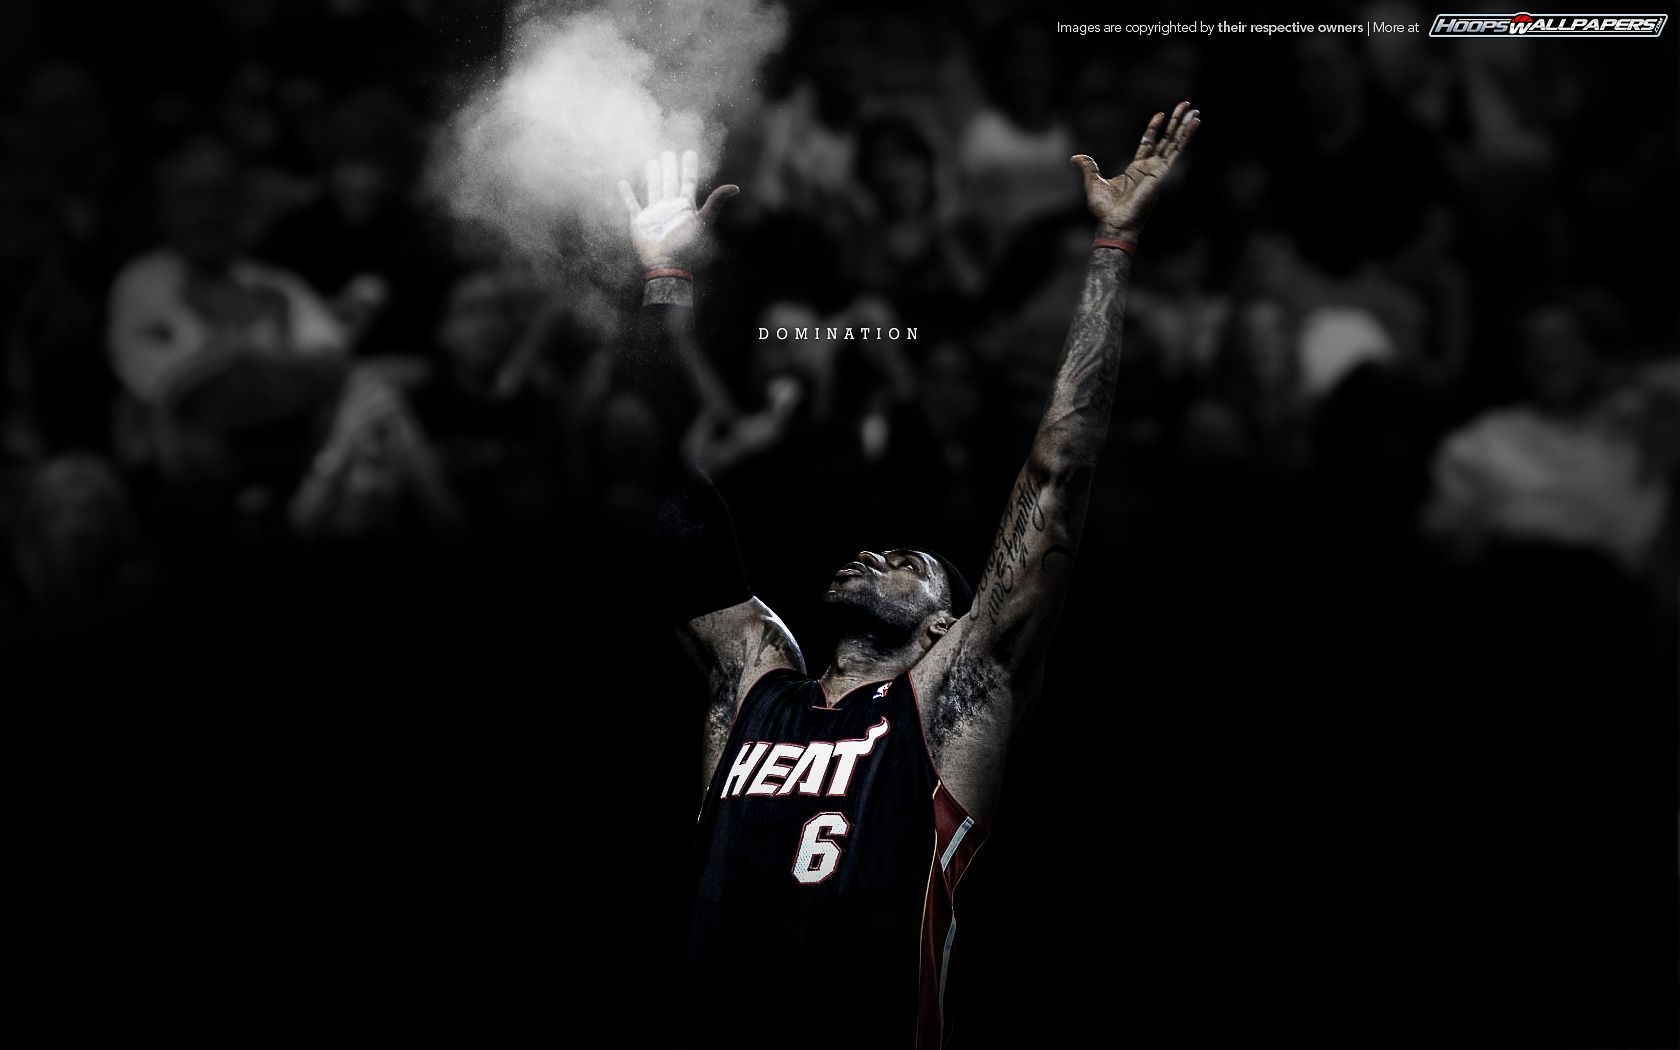 HD wallpaper: Lebron James NBA-Sports Poster Wallpaper, black